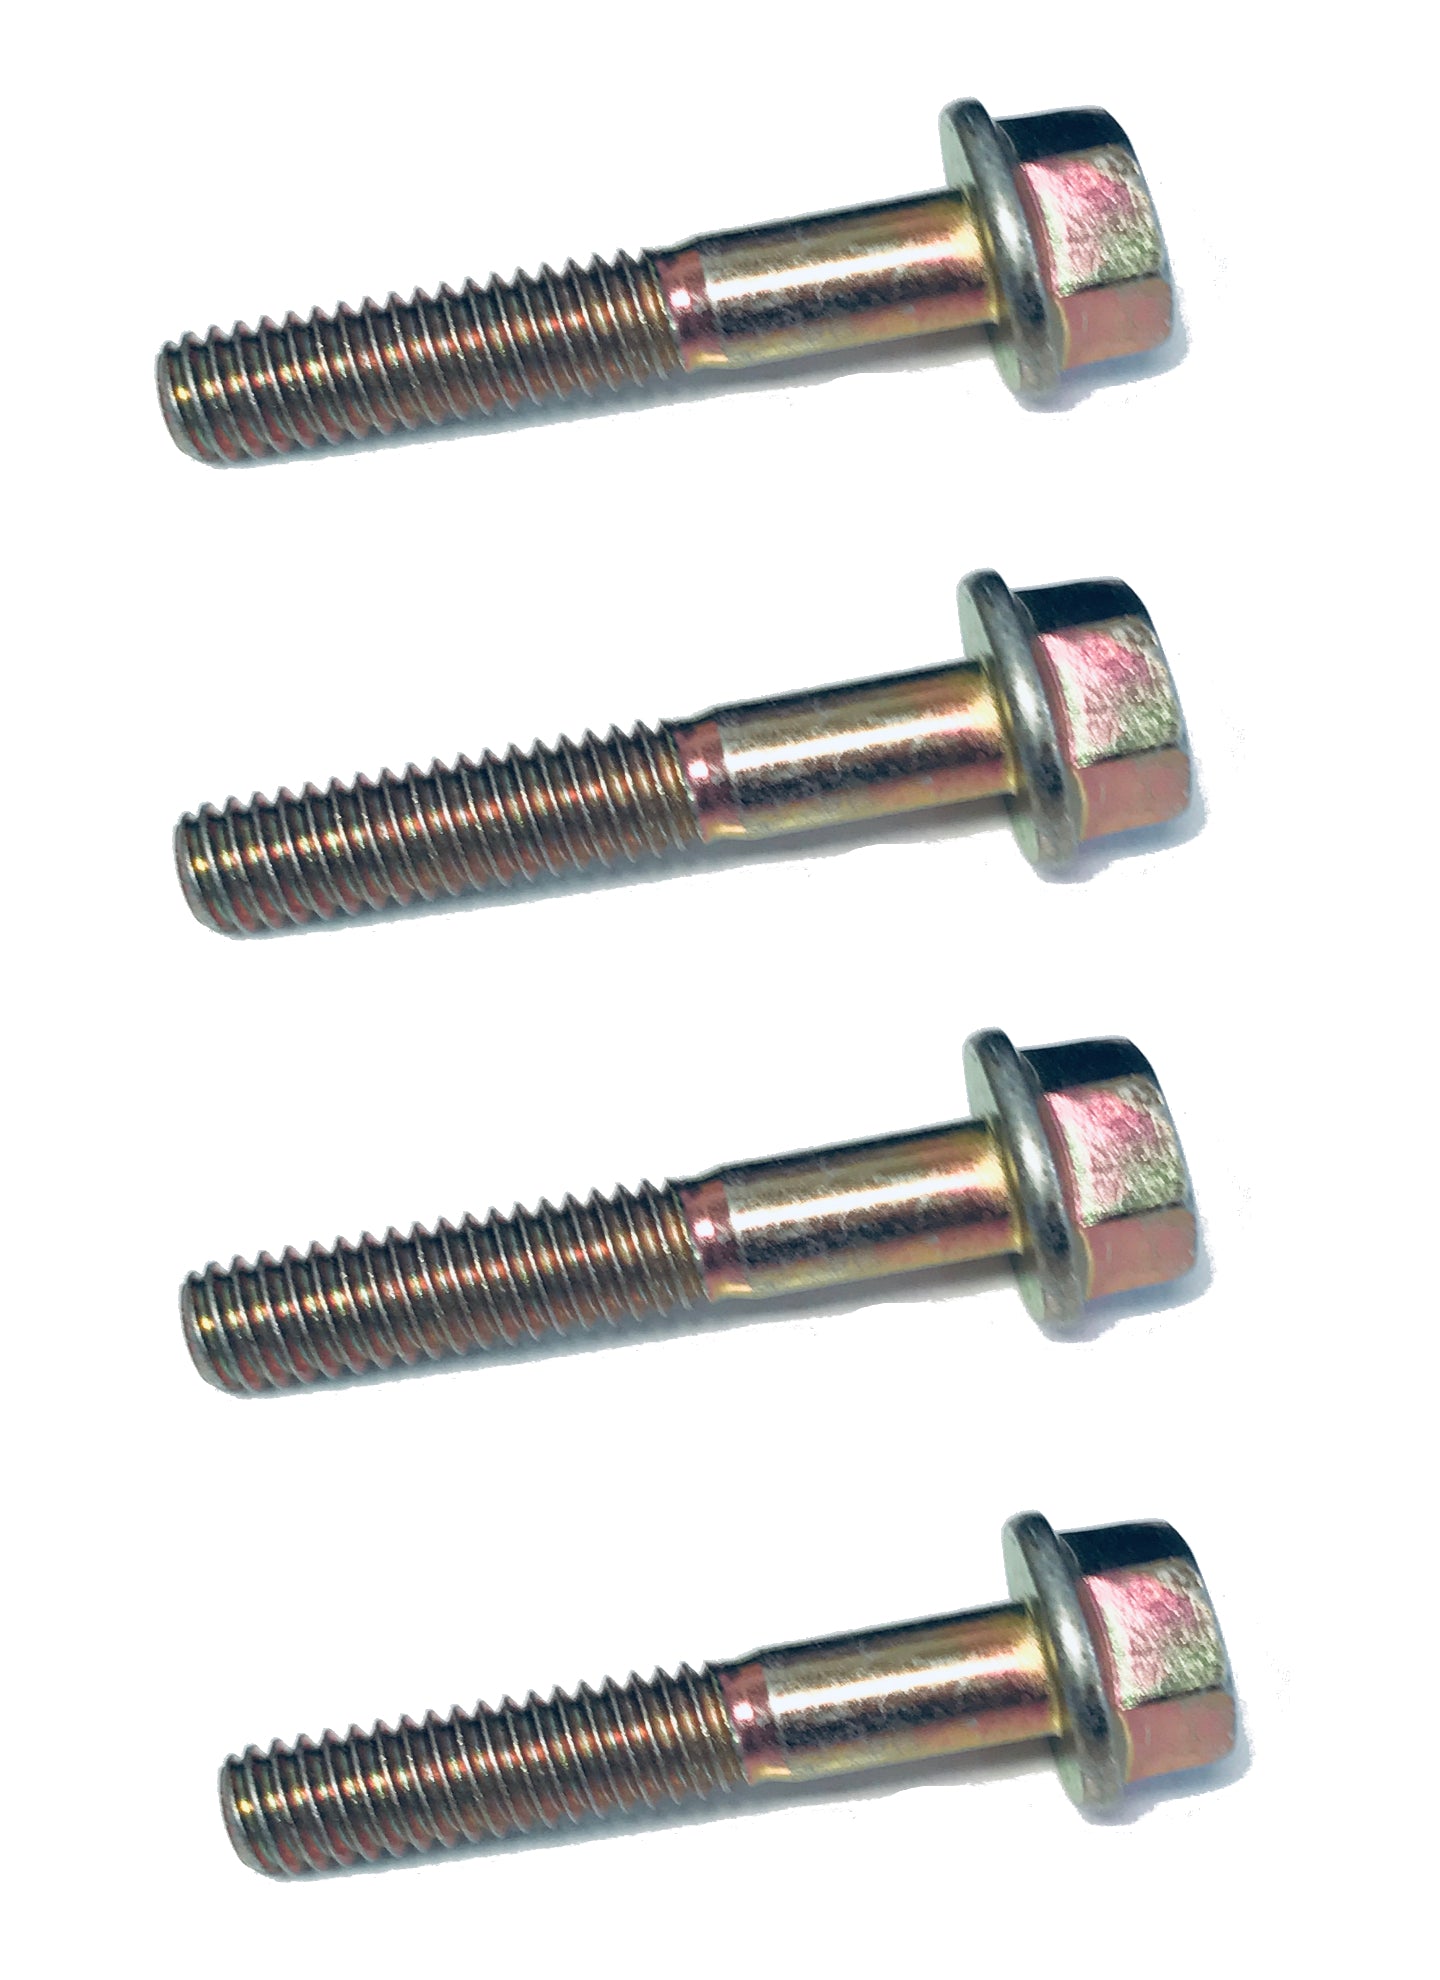 John Deere Original Equipment Screw (Pack of 4) - 19M8317,4